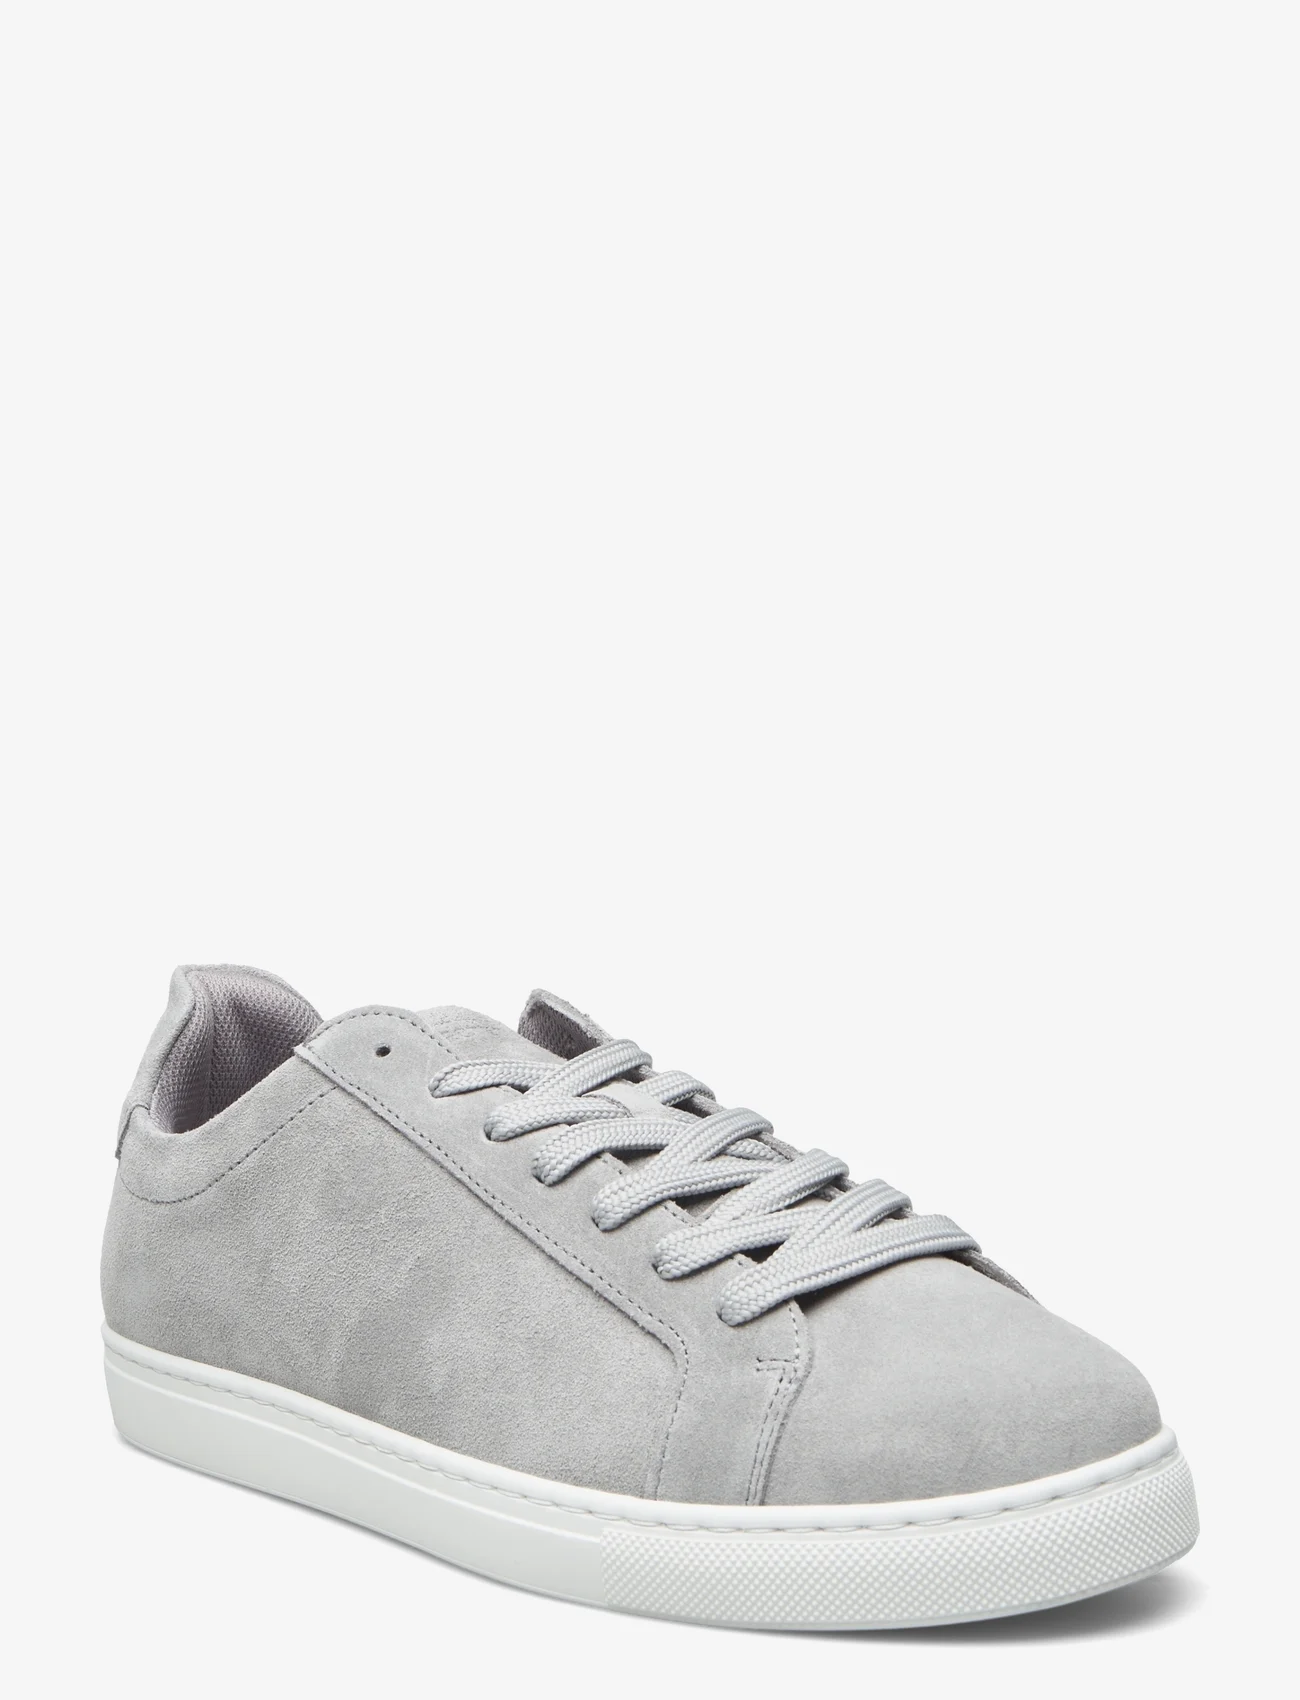 Selected Homme - SLHEVAN NEW SUEDE SNEAKER - laag sneakers - grey - 0